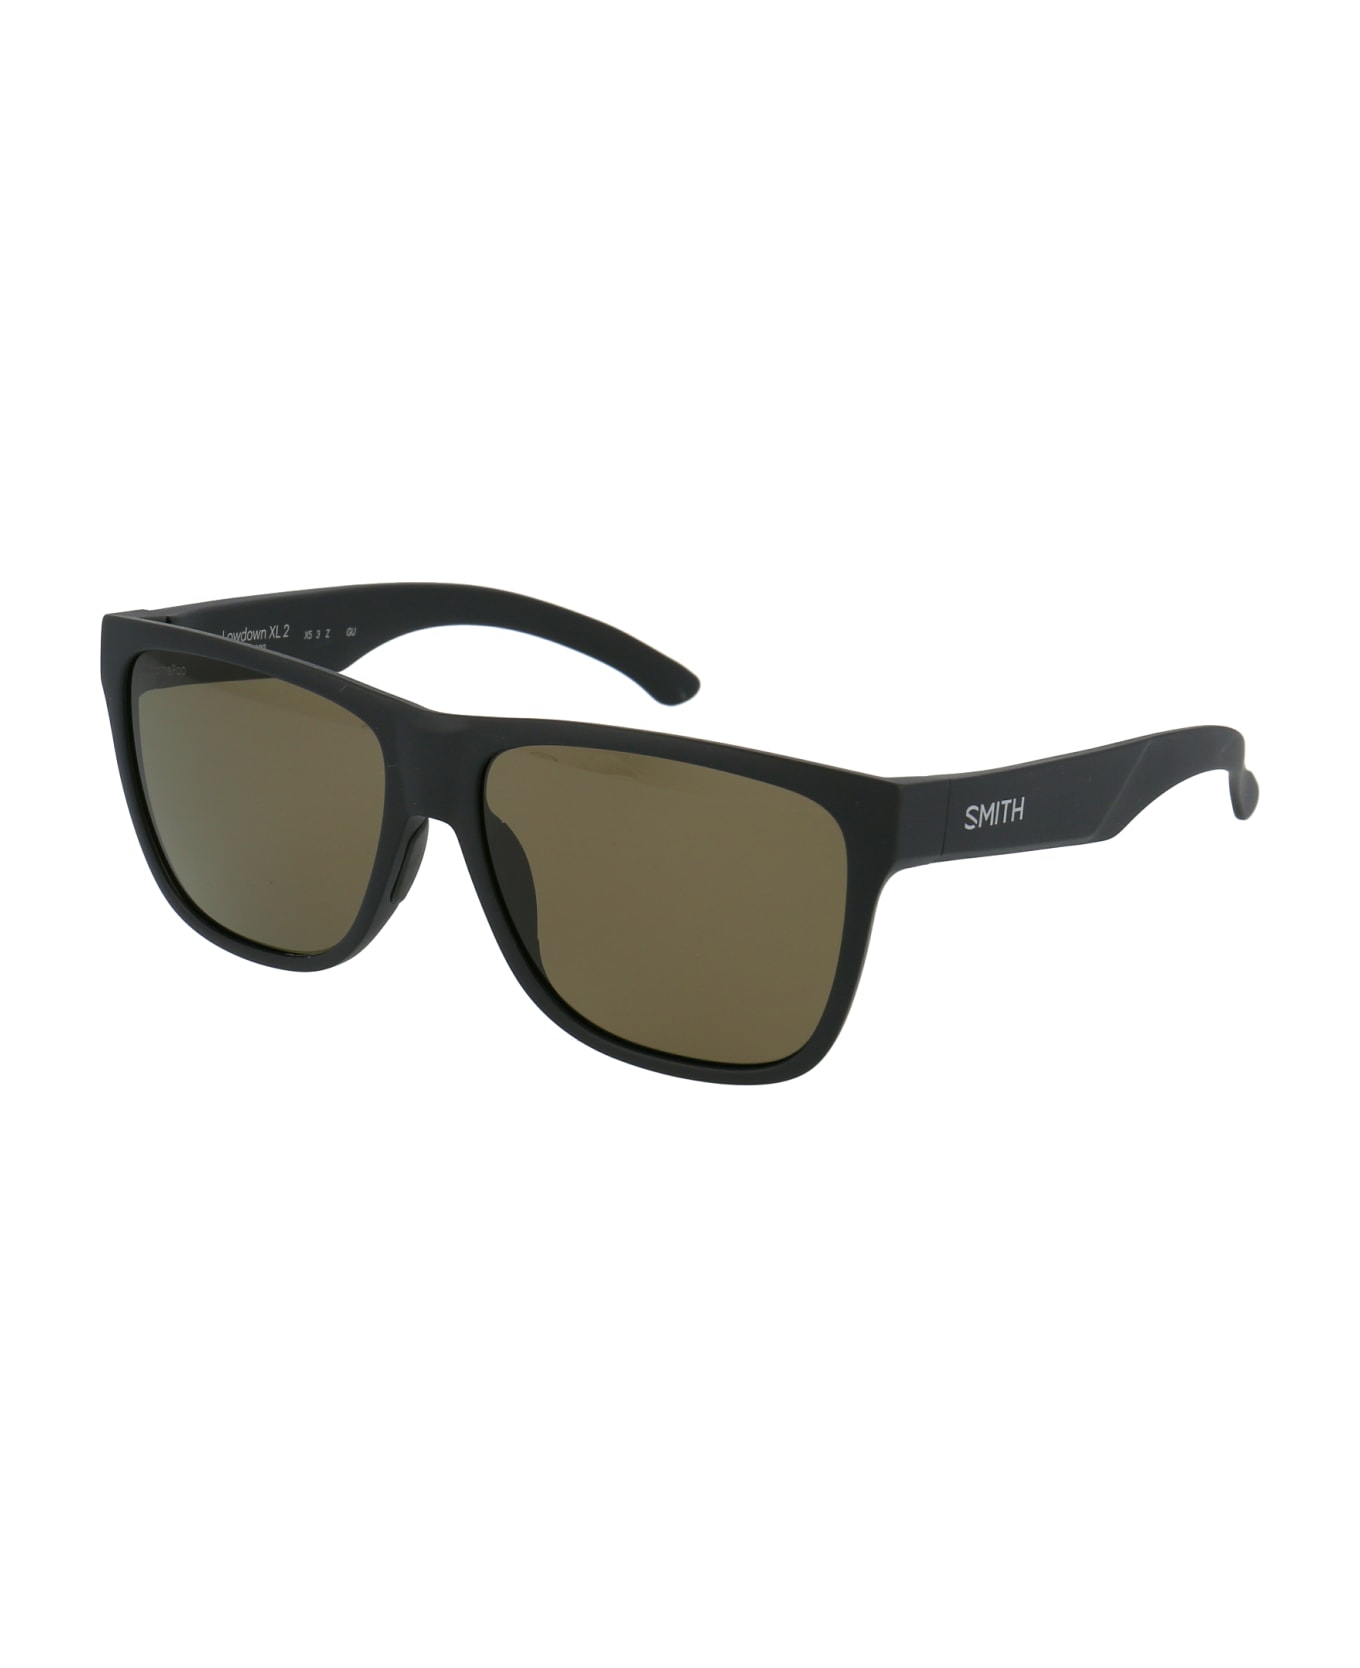 Smith Lowdown Xl 2 Sunglasses - 003L7 MATT BLACK